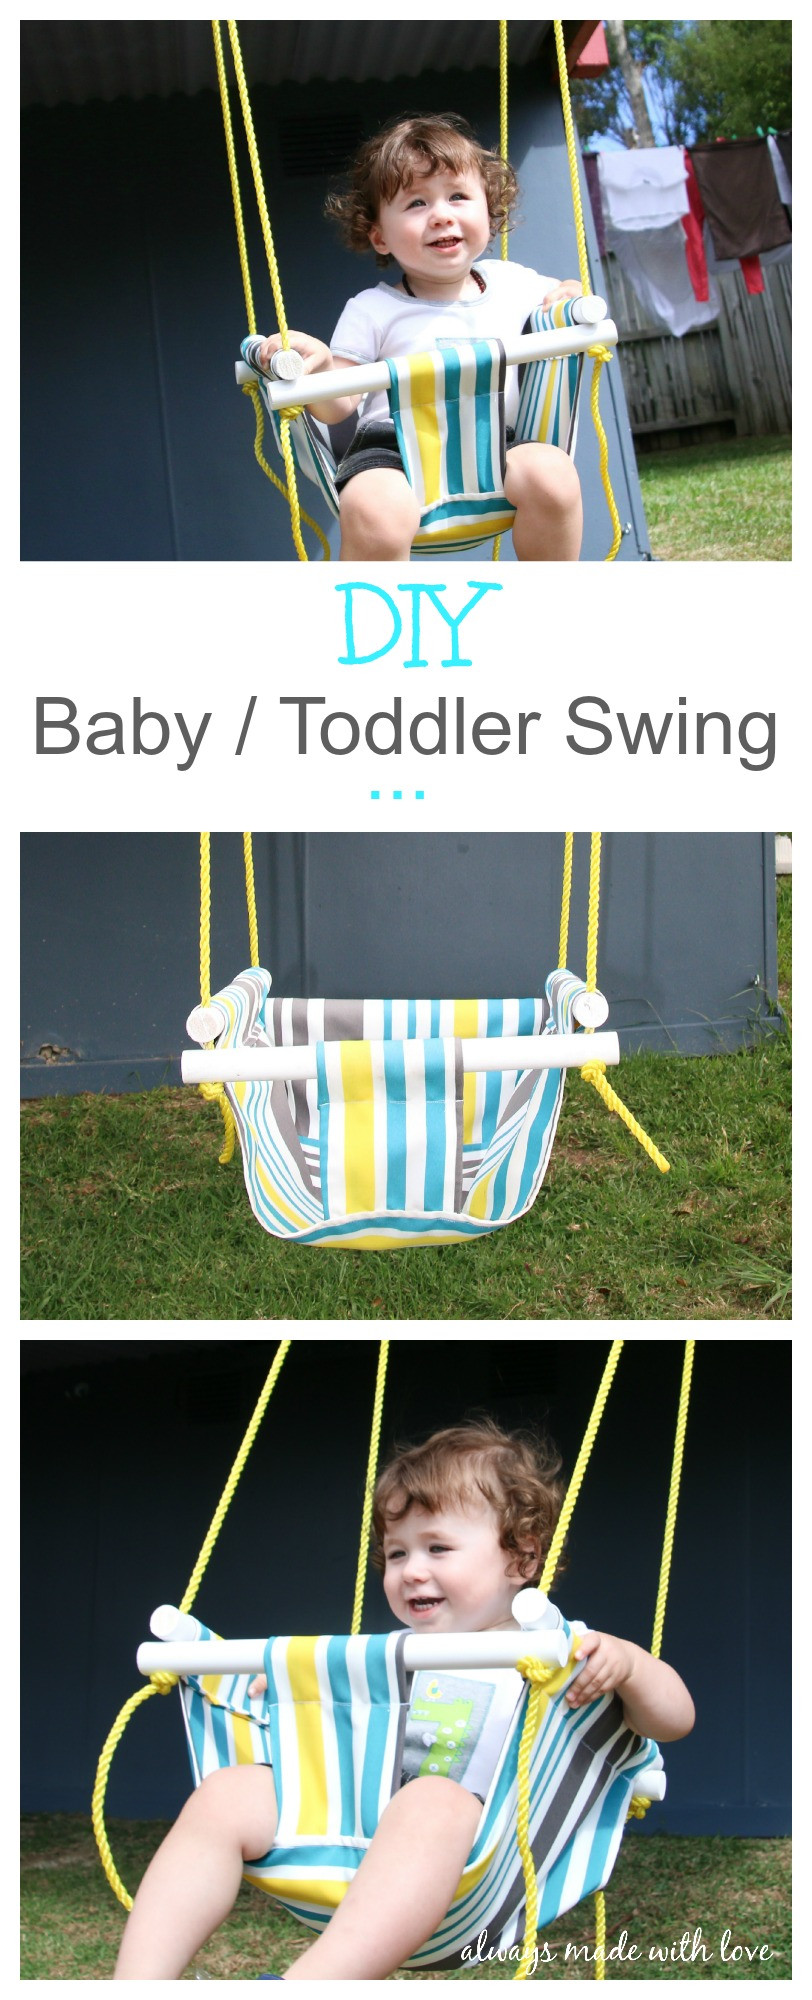 DIY Toddler Swing
 DIY Baby Toddler Swing Always Made With Love